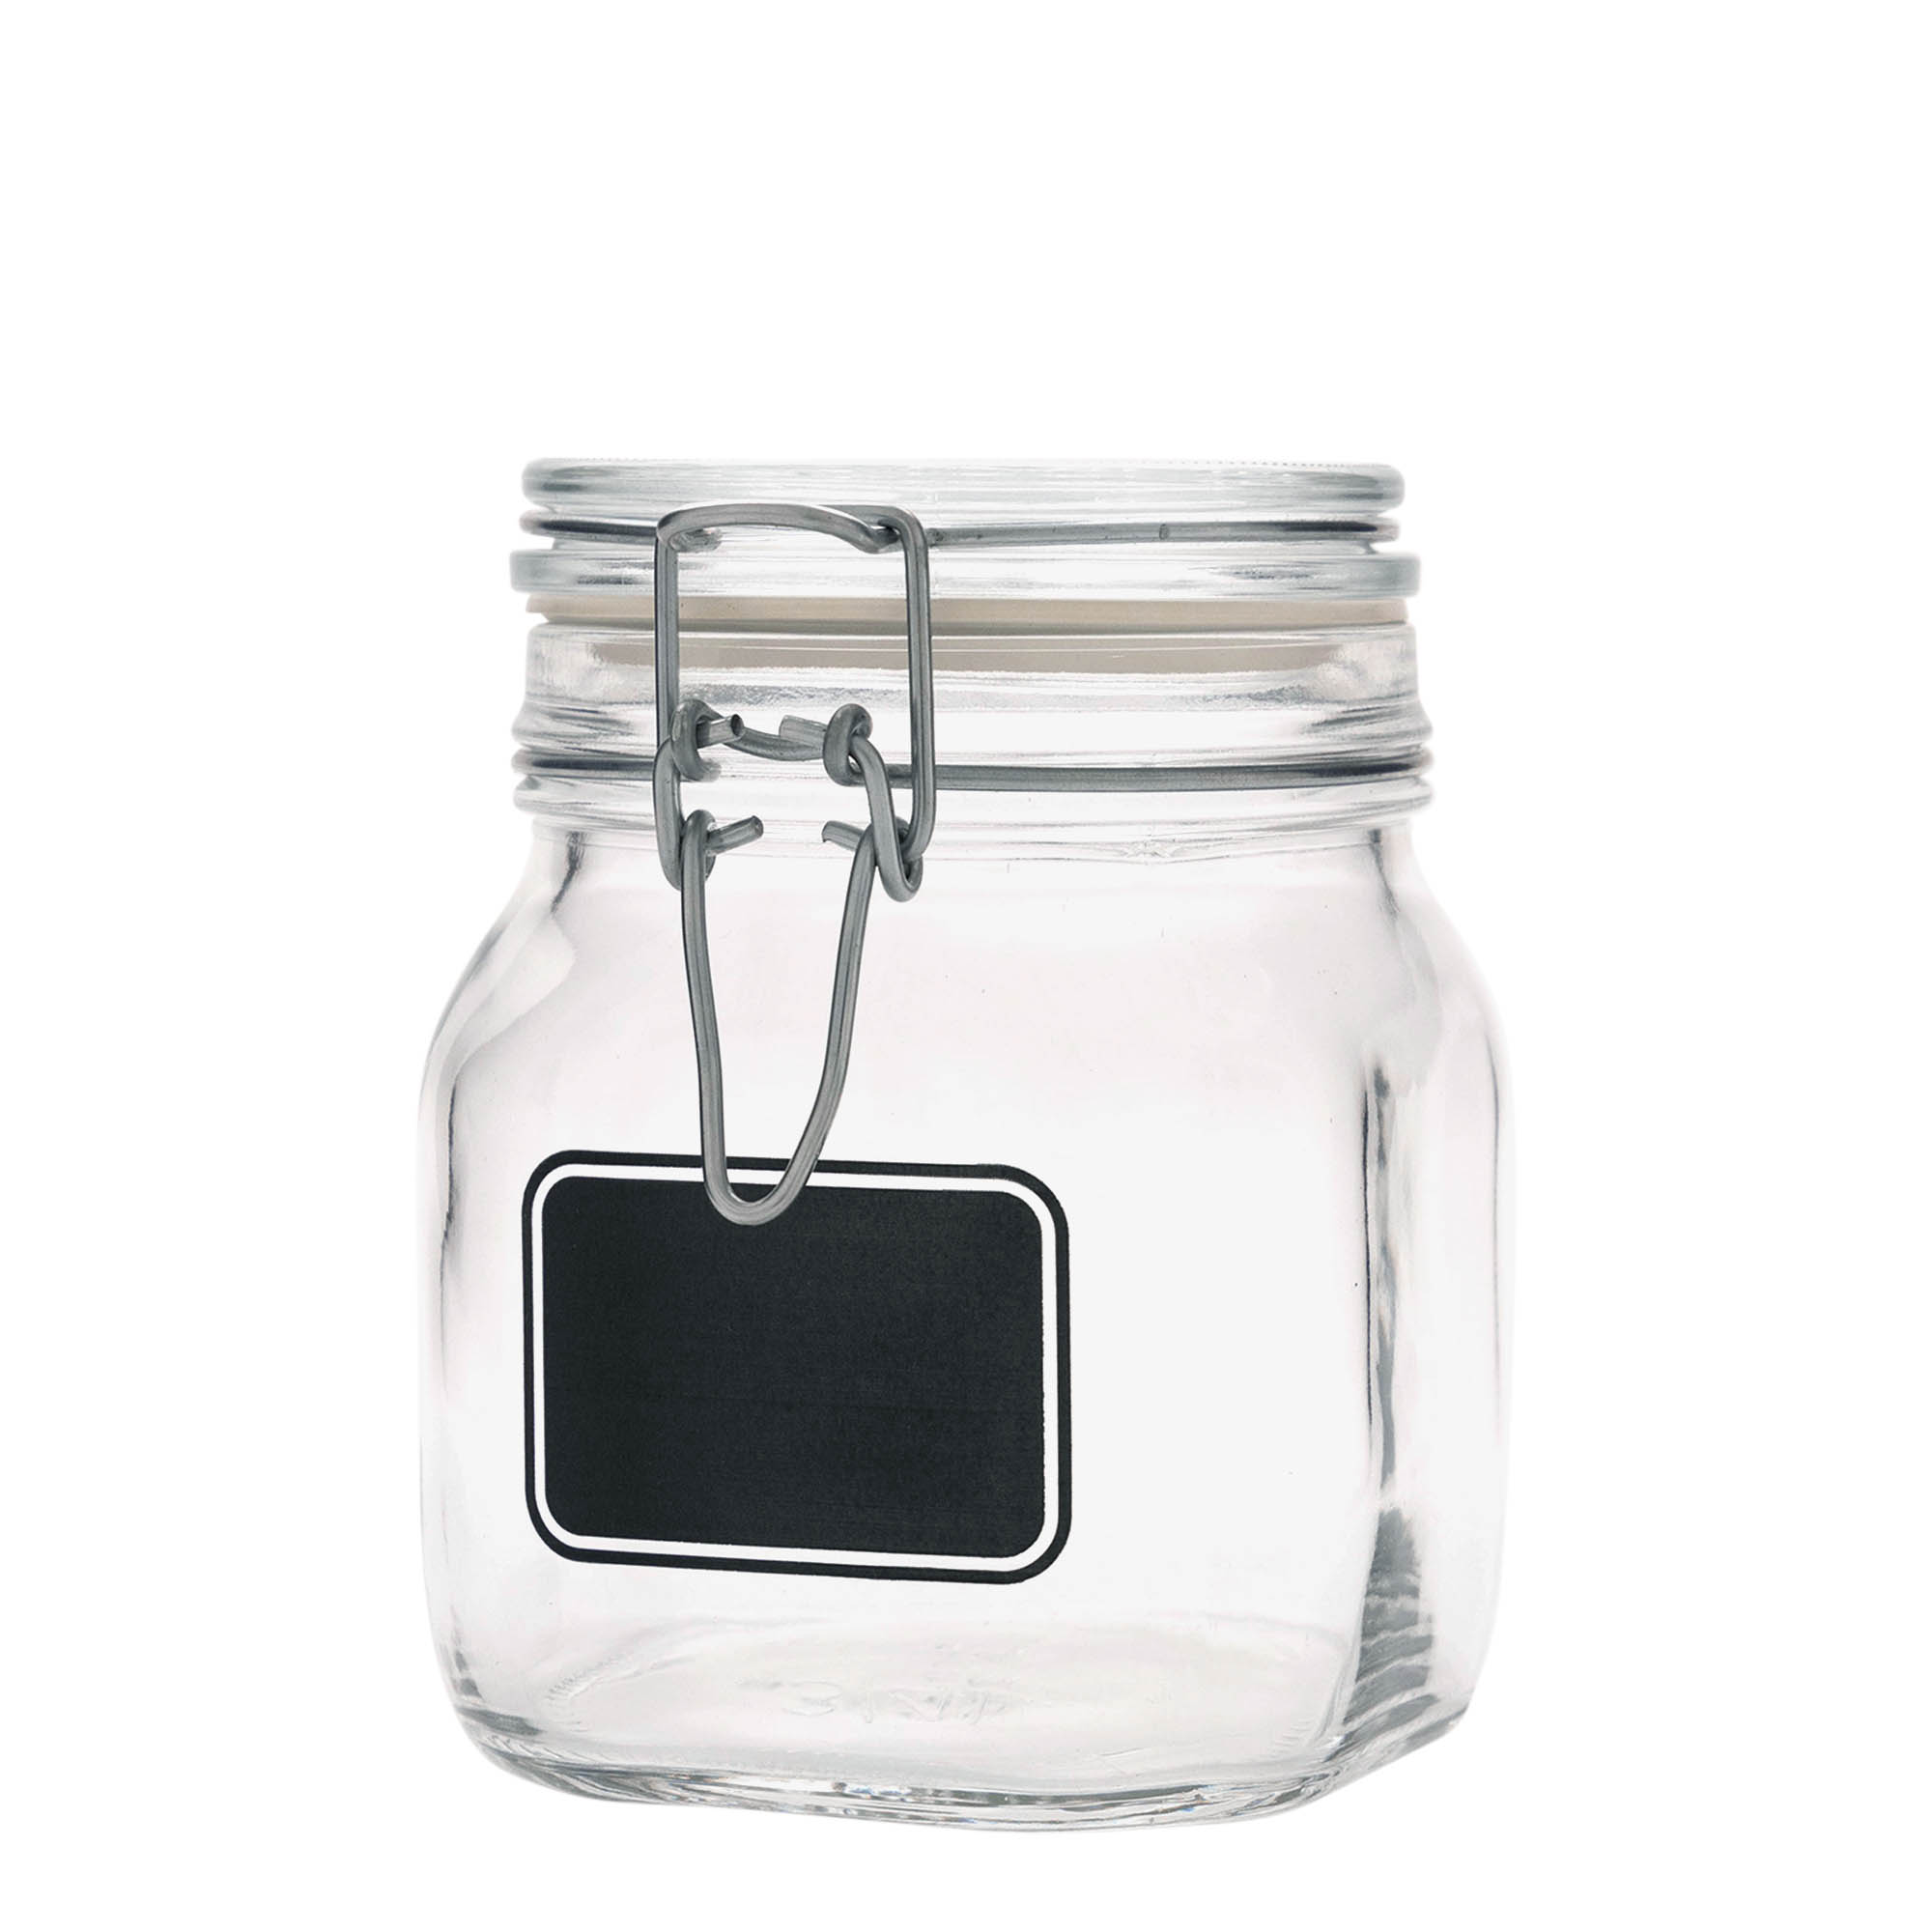 750 ml-es fémcsatos üveg 'Fido', motívum: Címkemező, négyzet alakú, szájnyílás: fémcsatos zár